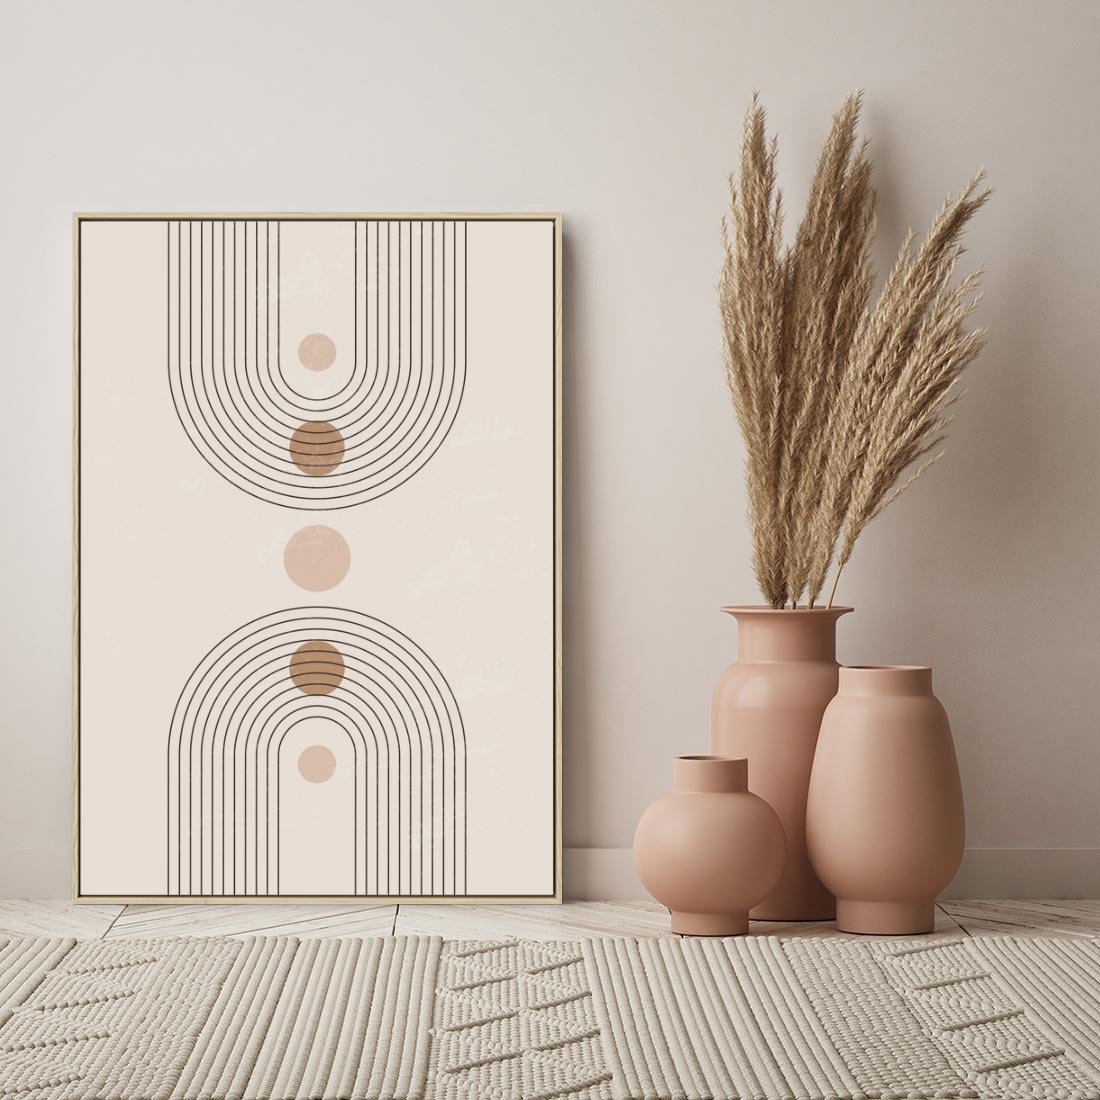 Obraz w ramie 50x70 - Zgeometryzowane Wizje - boho plakat, minimalizm - rama drewno